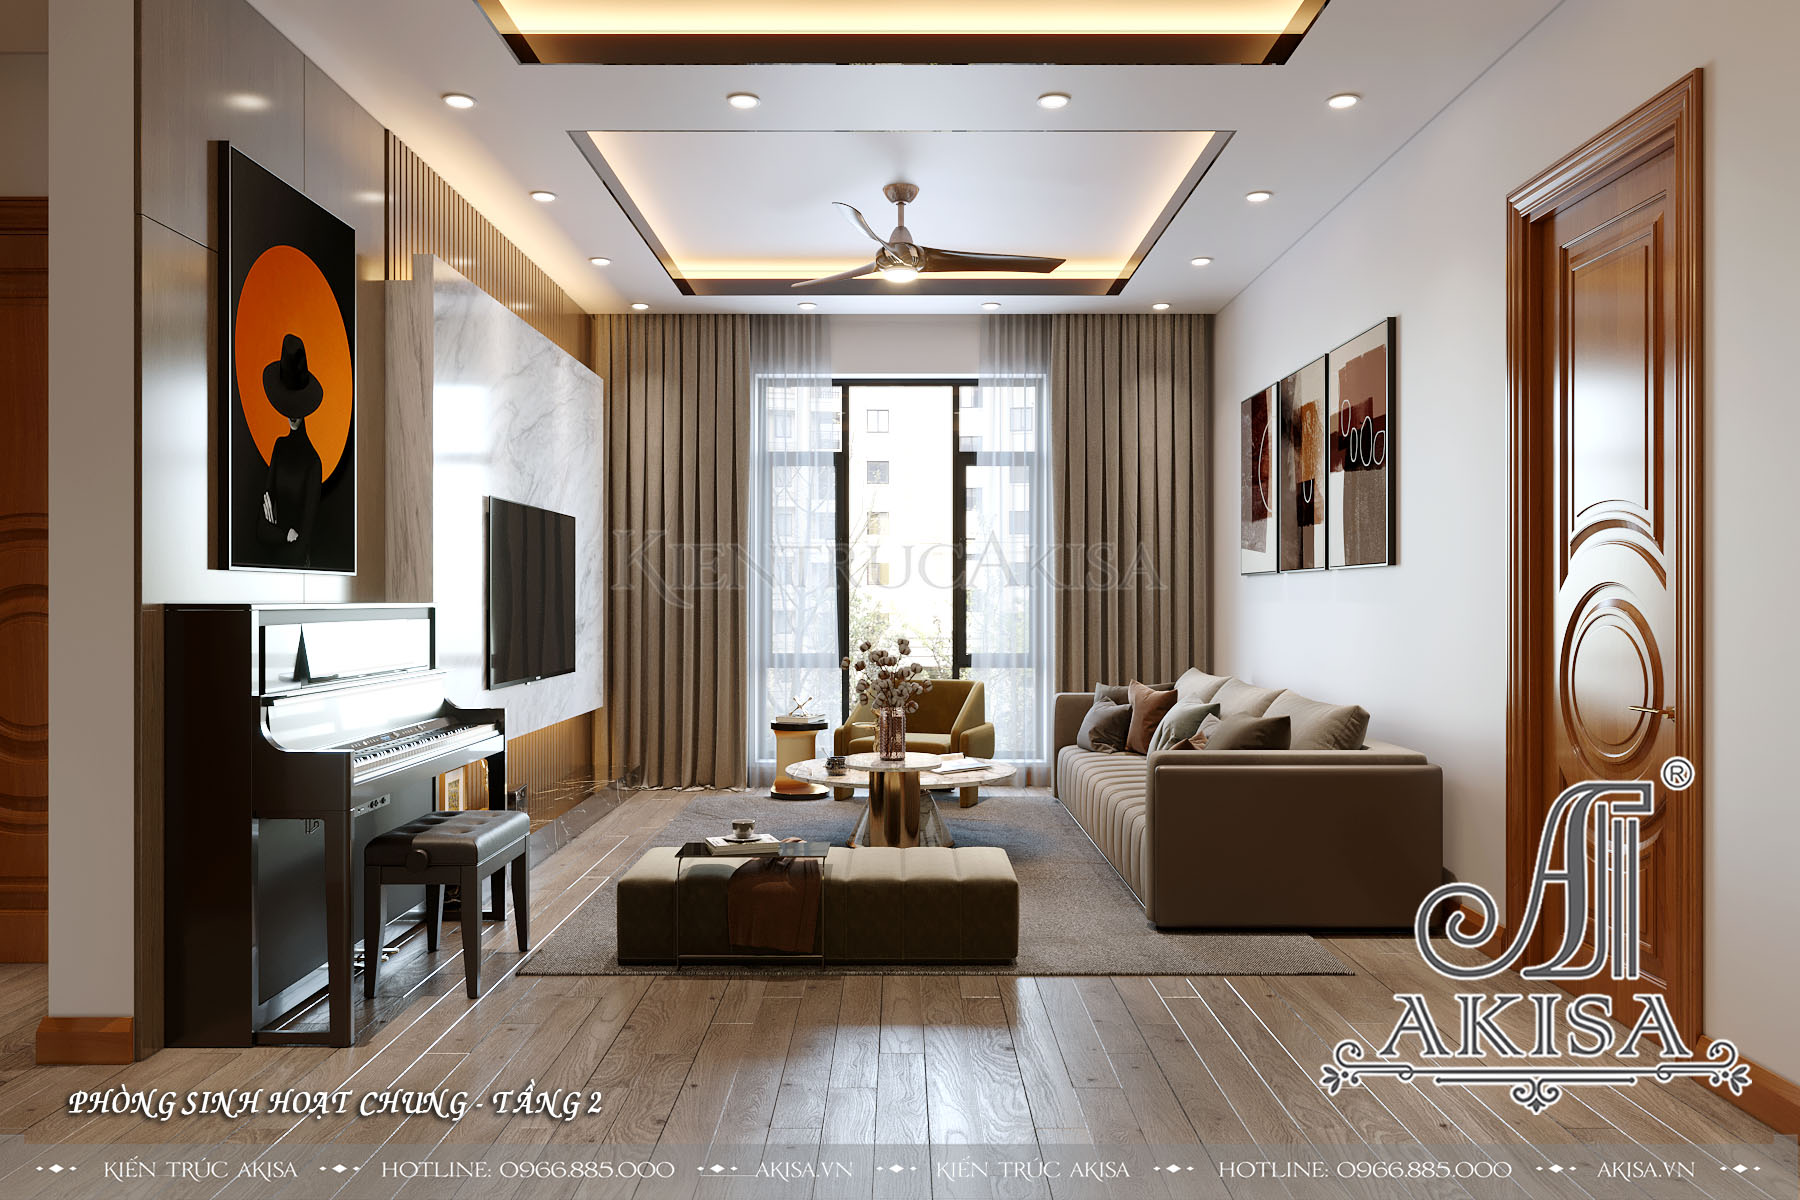 Với mẫu thiết kế nội thất đẹp phong cách hiện đại, không gian sống của bạn sẽ trở nên thanh lịch và tinh tế, mang lại cảm giác thư thái và tiện nghi.